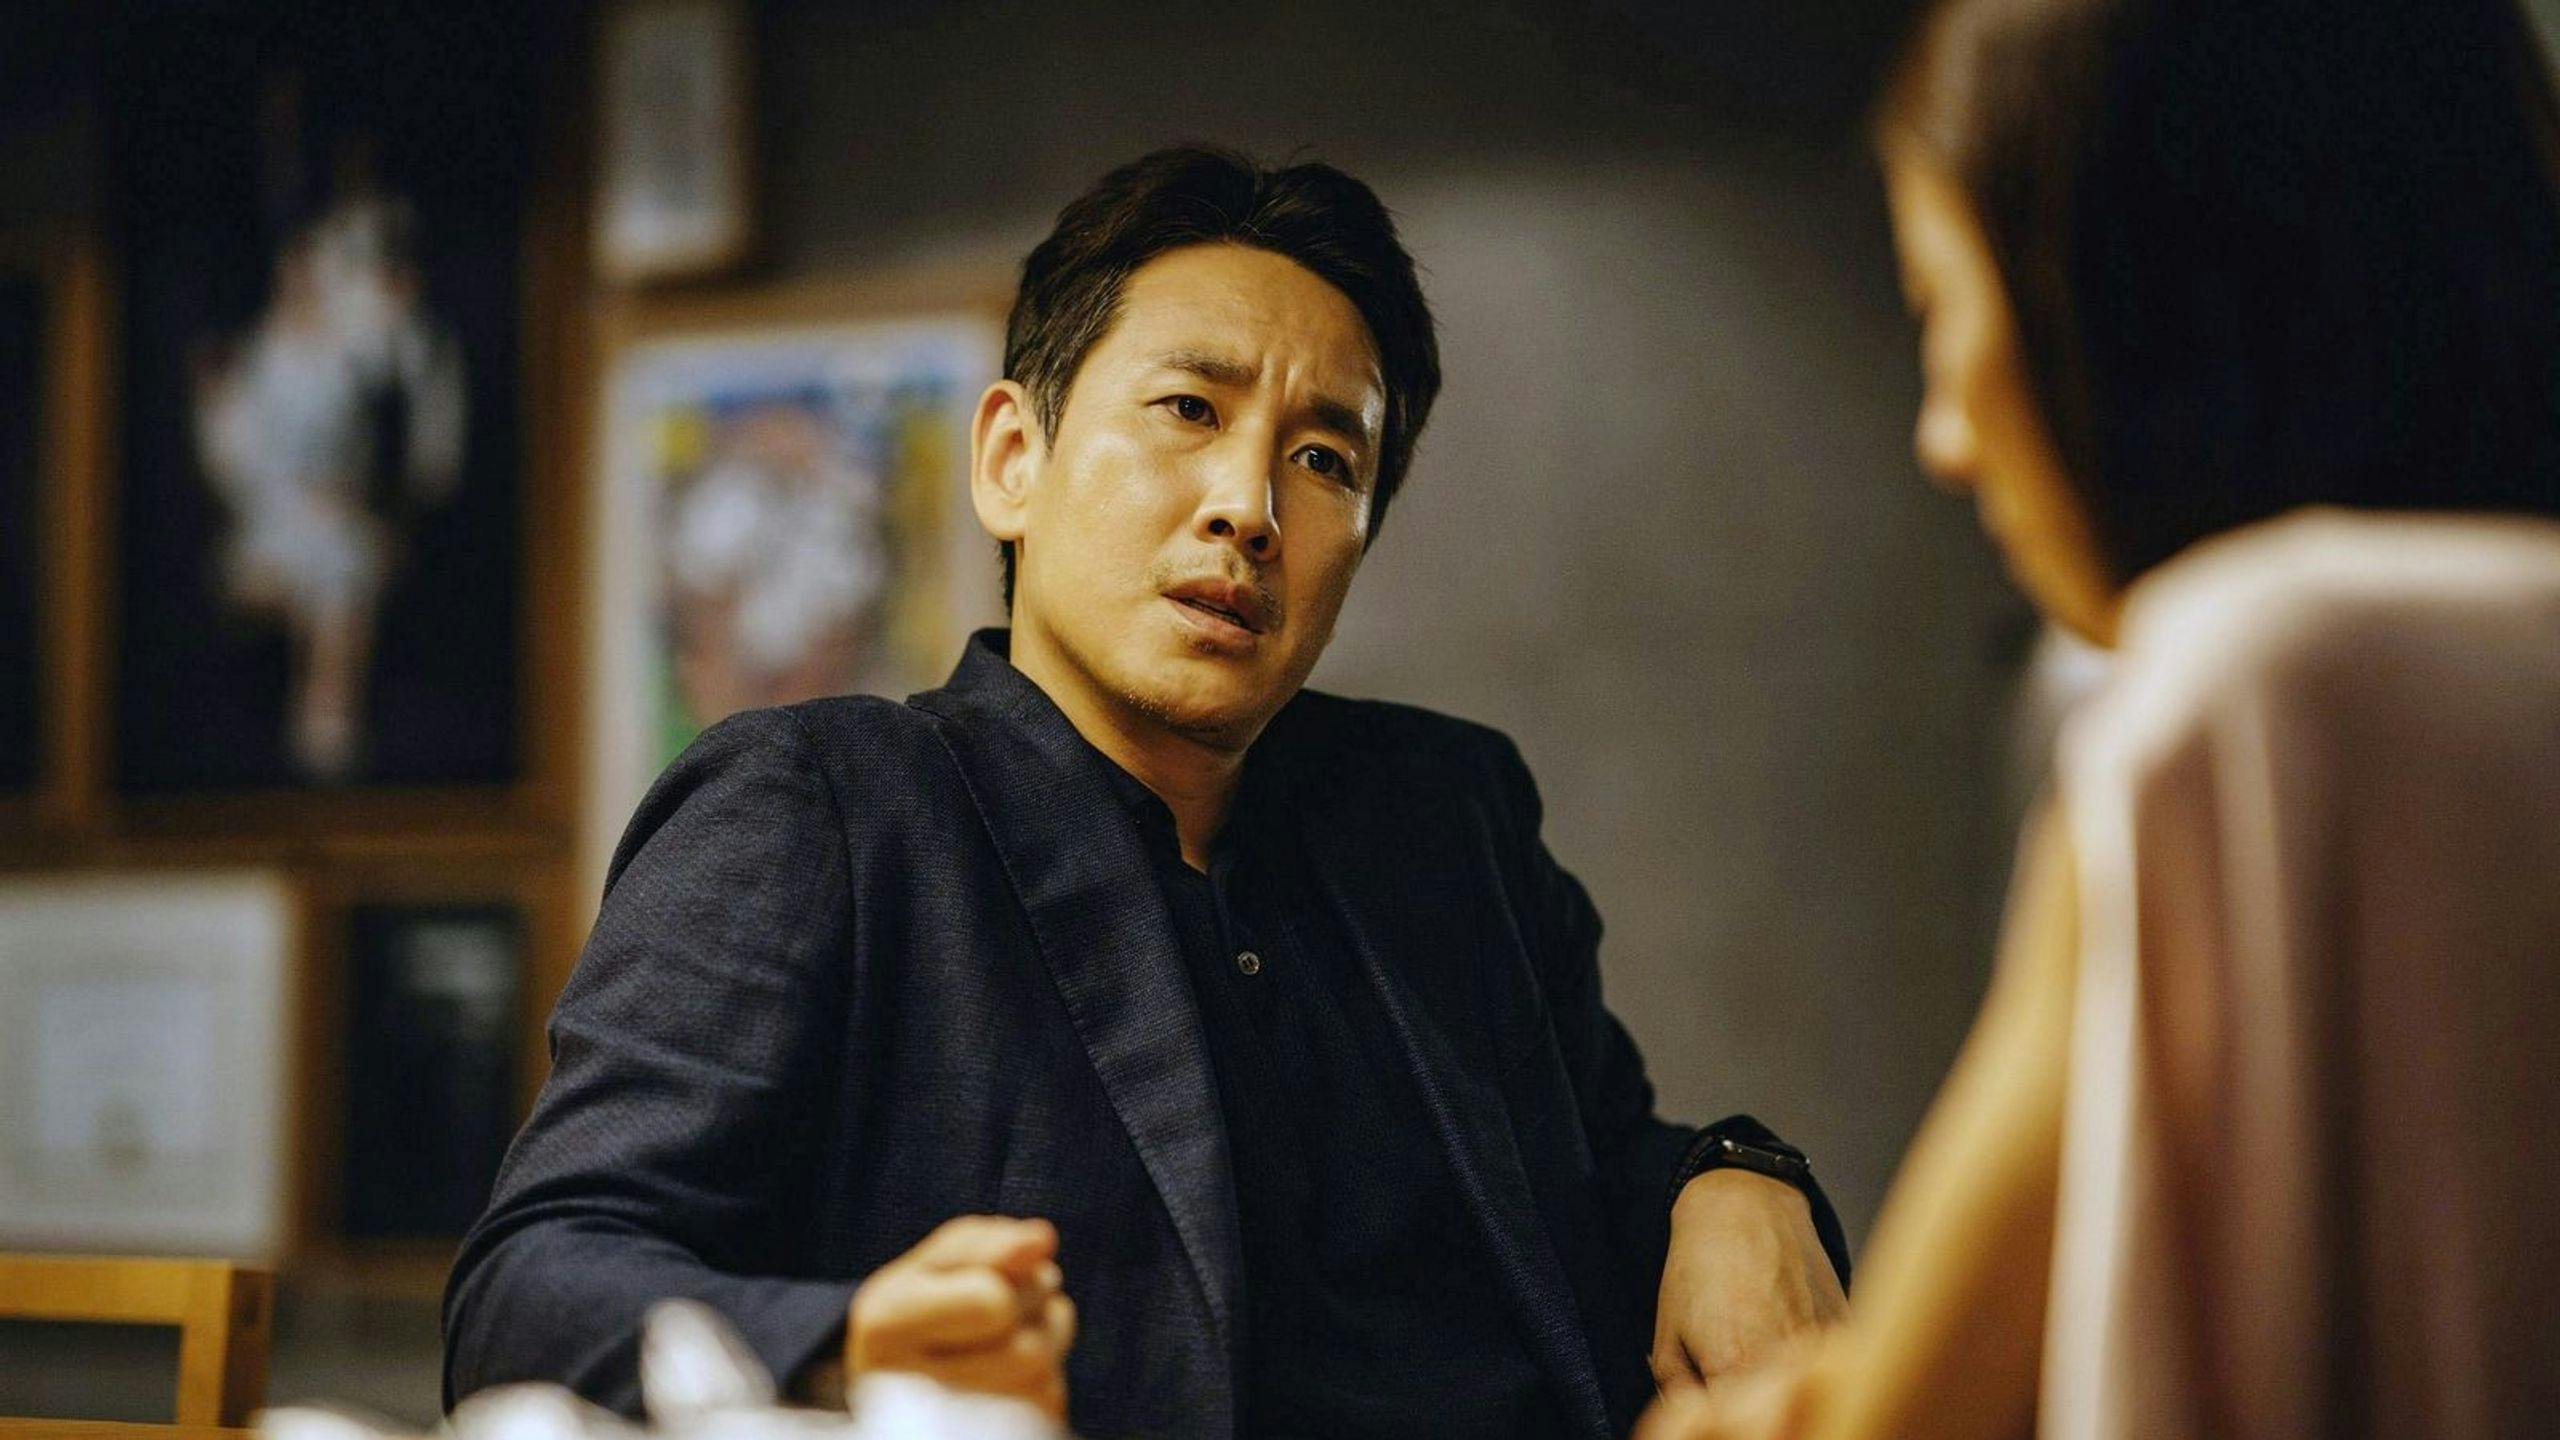 El actor Lee Sun-kyun, en un fotograma promocional de la película 'Parásitos'